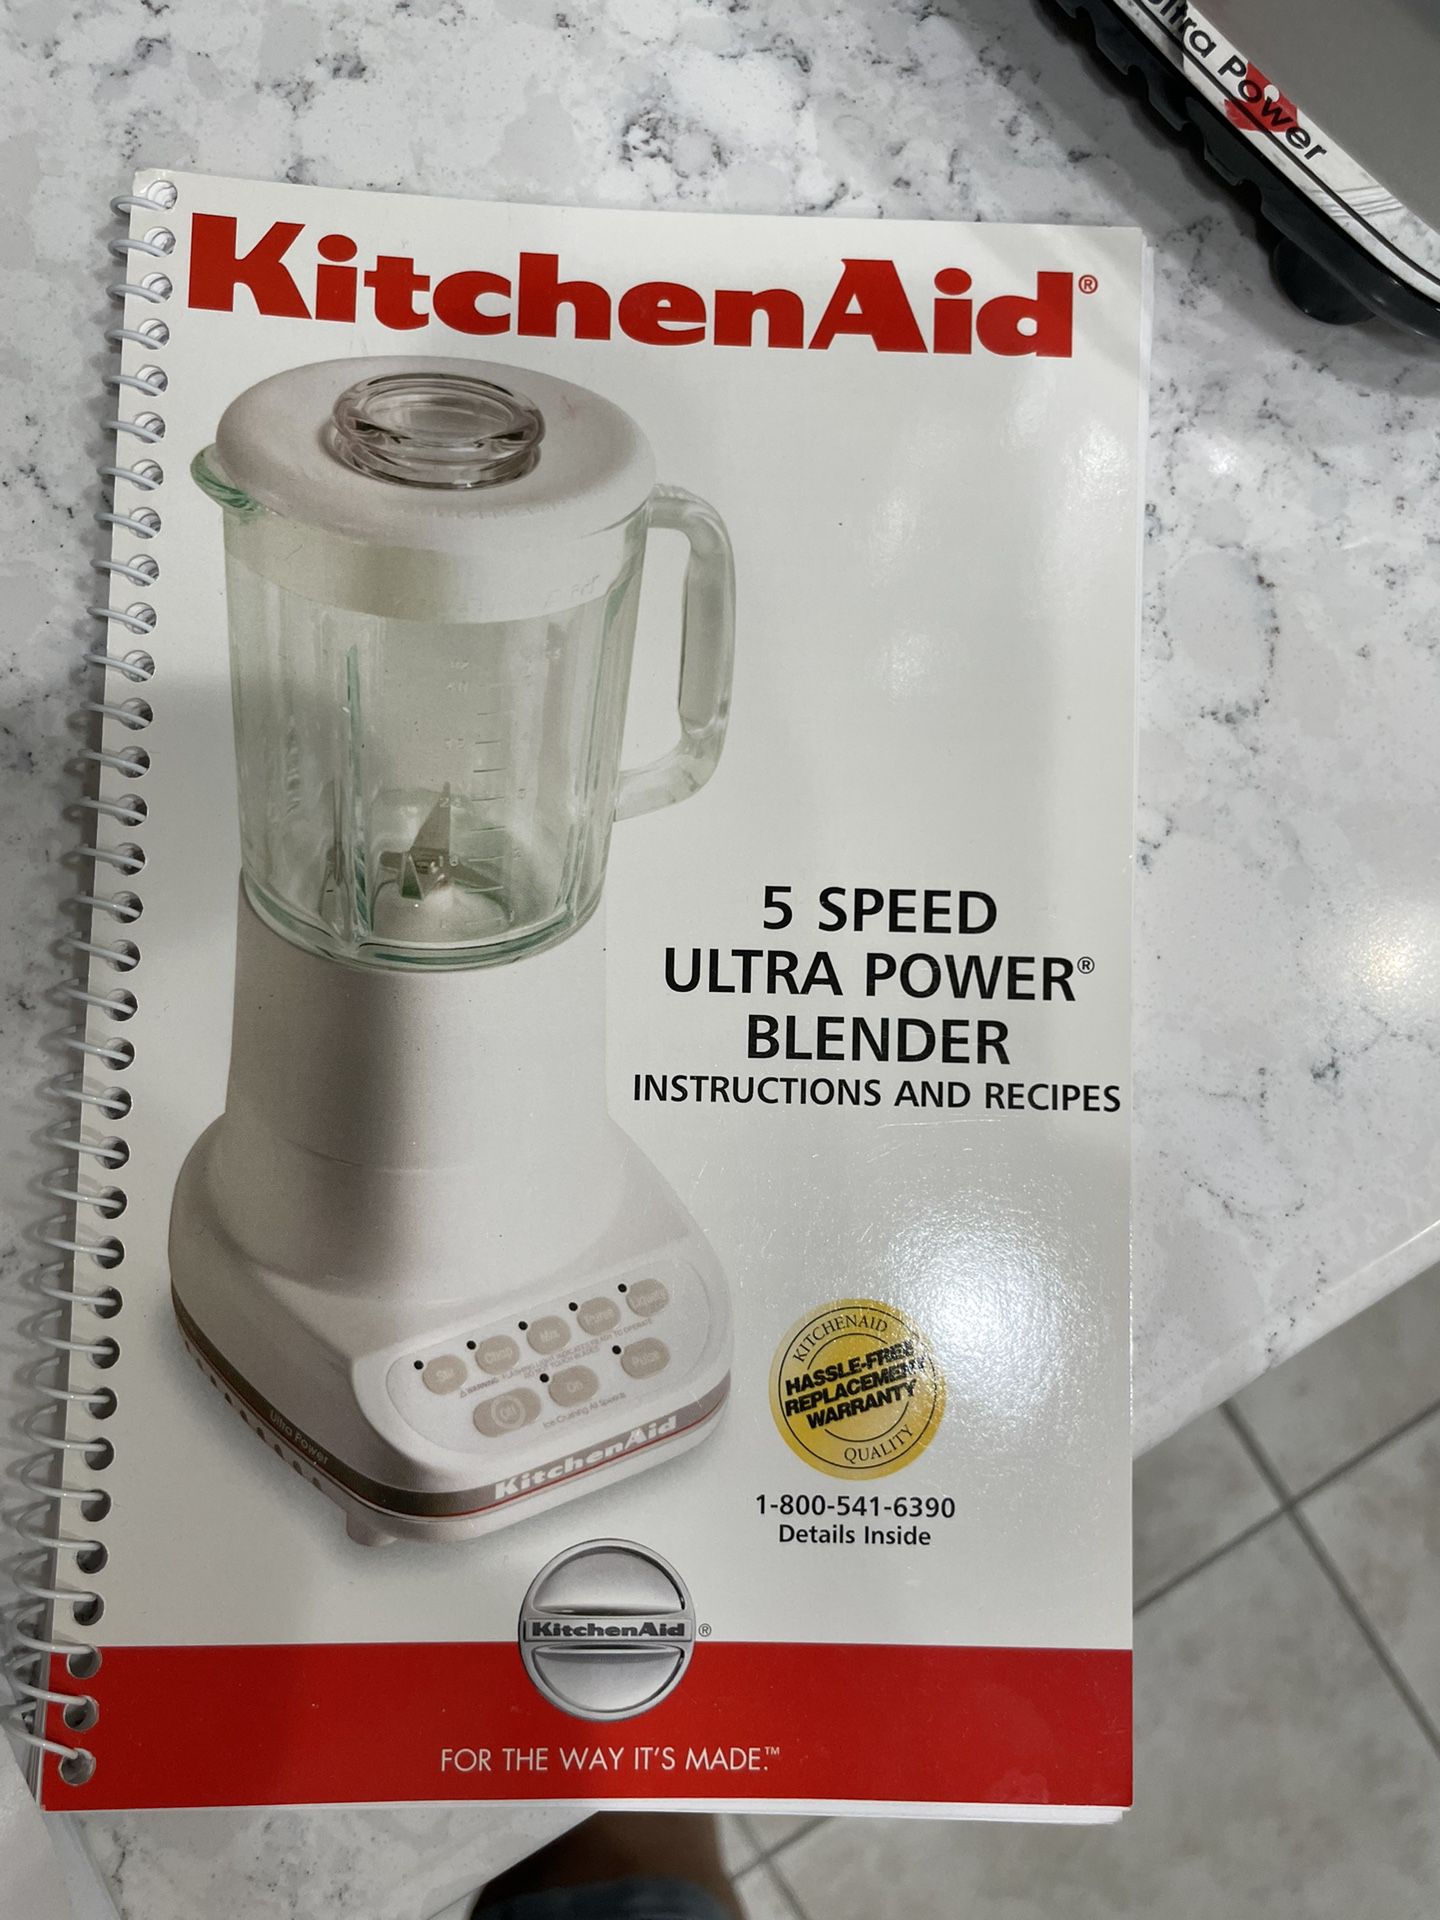 Kitchen Aid 5 Speed Ultra Power Blender by Kitchenaid